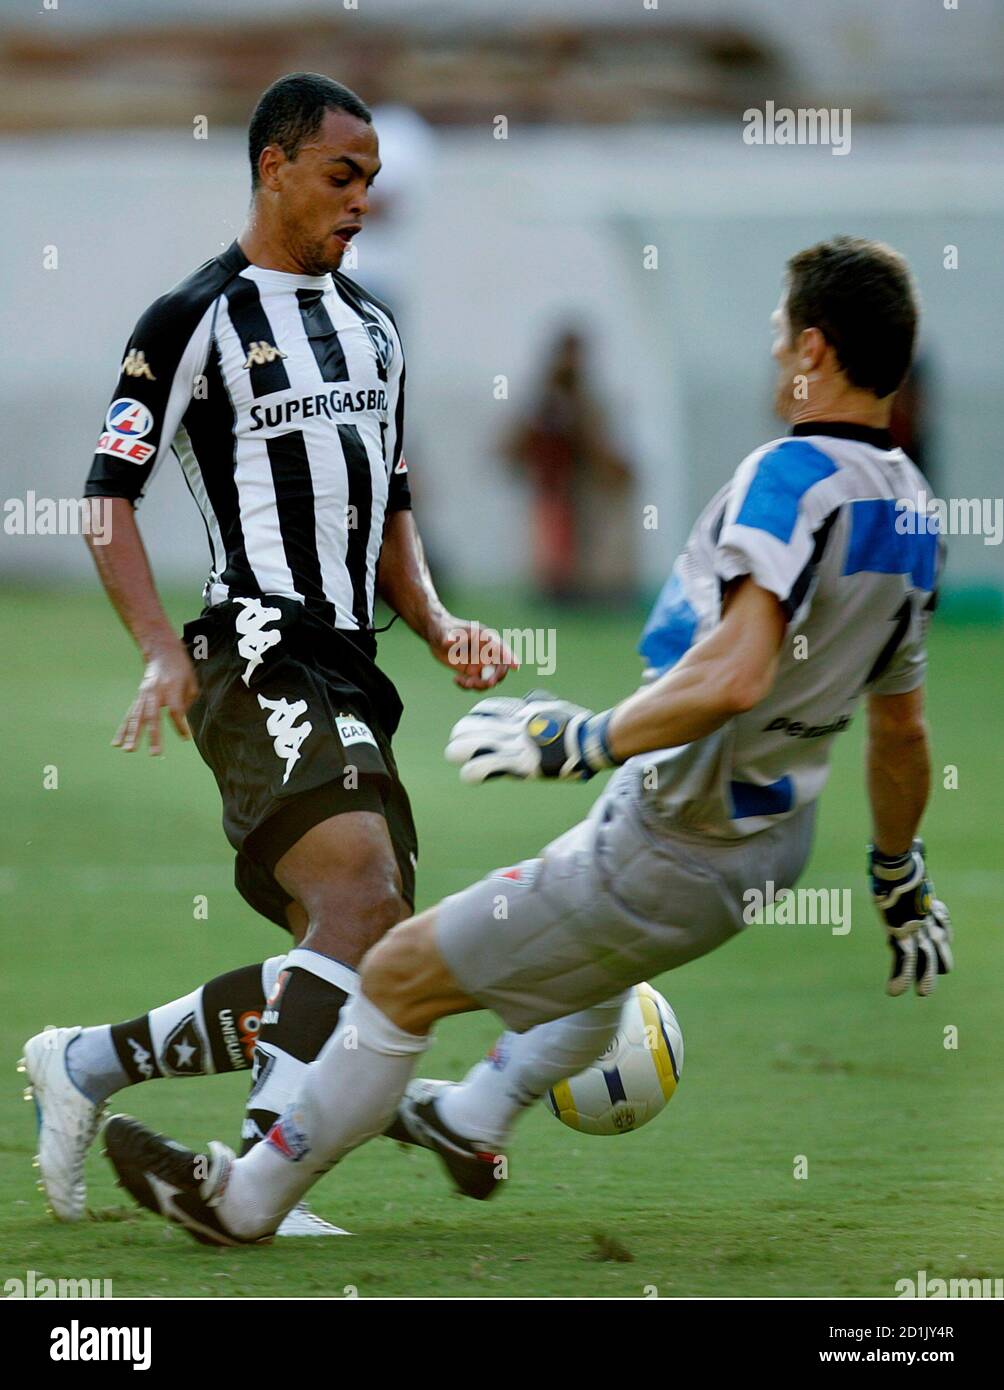 El Dodo (R) de Botafogo pasa por el portero de Fortaleza Maizena durante su partido brasileño de fútbol en el estadio de Maracaná en Río de Janeiro el 16 de abril de 2006. El campeonato brasileño comenzó oficialmente el 15 de abril y se extiende hasta diciembre REUTERS/Bruno Domingos Foto de stock